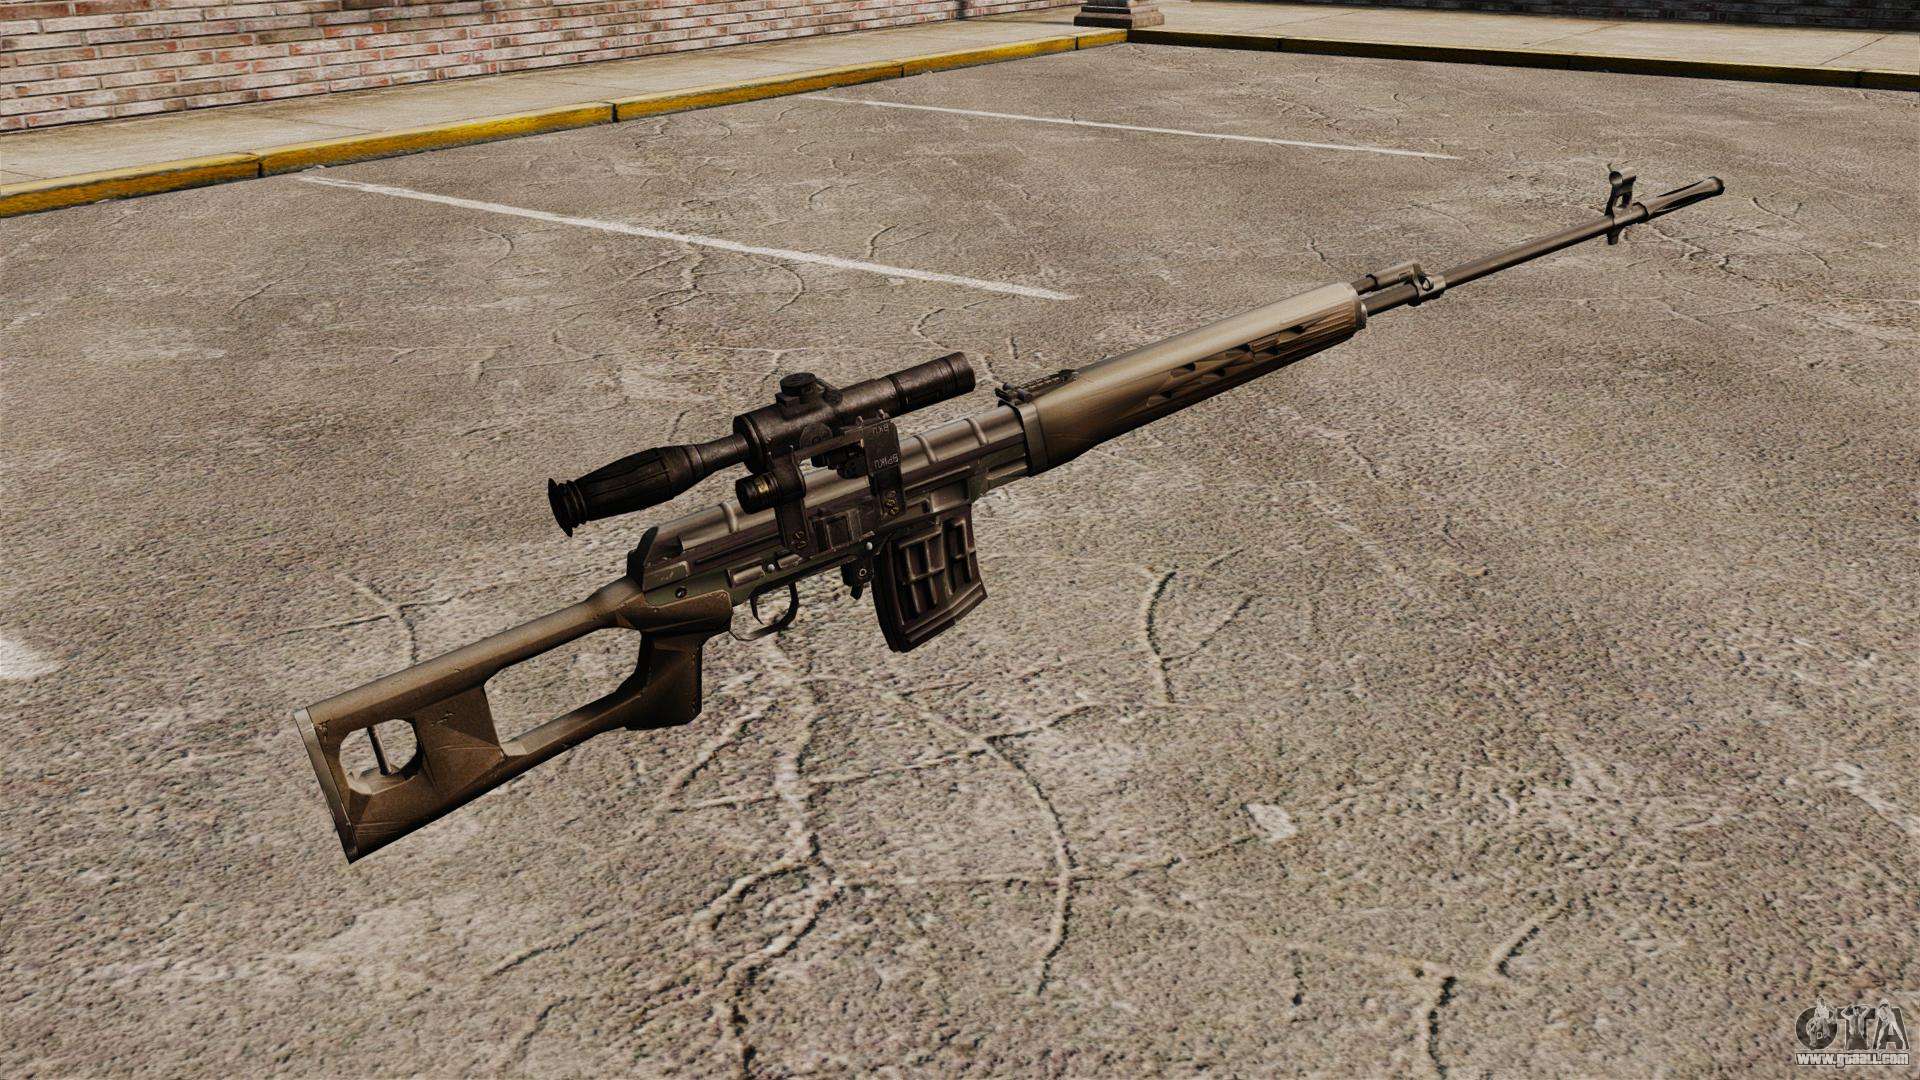 Dragunov sniper rifle v2 for GTA 4